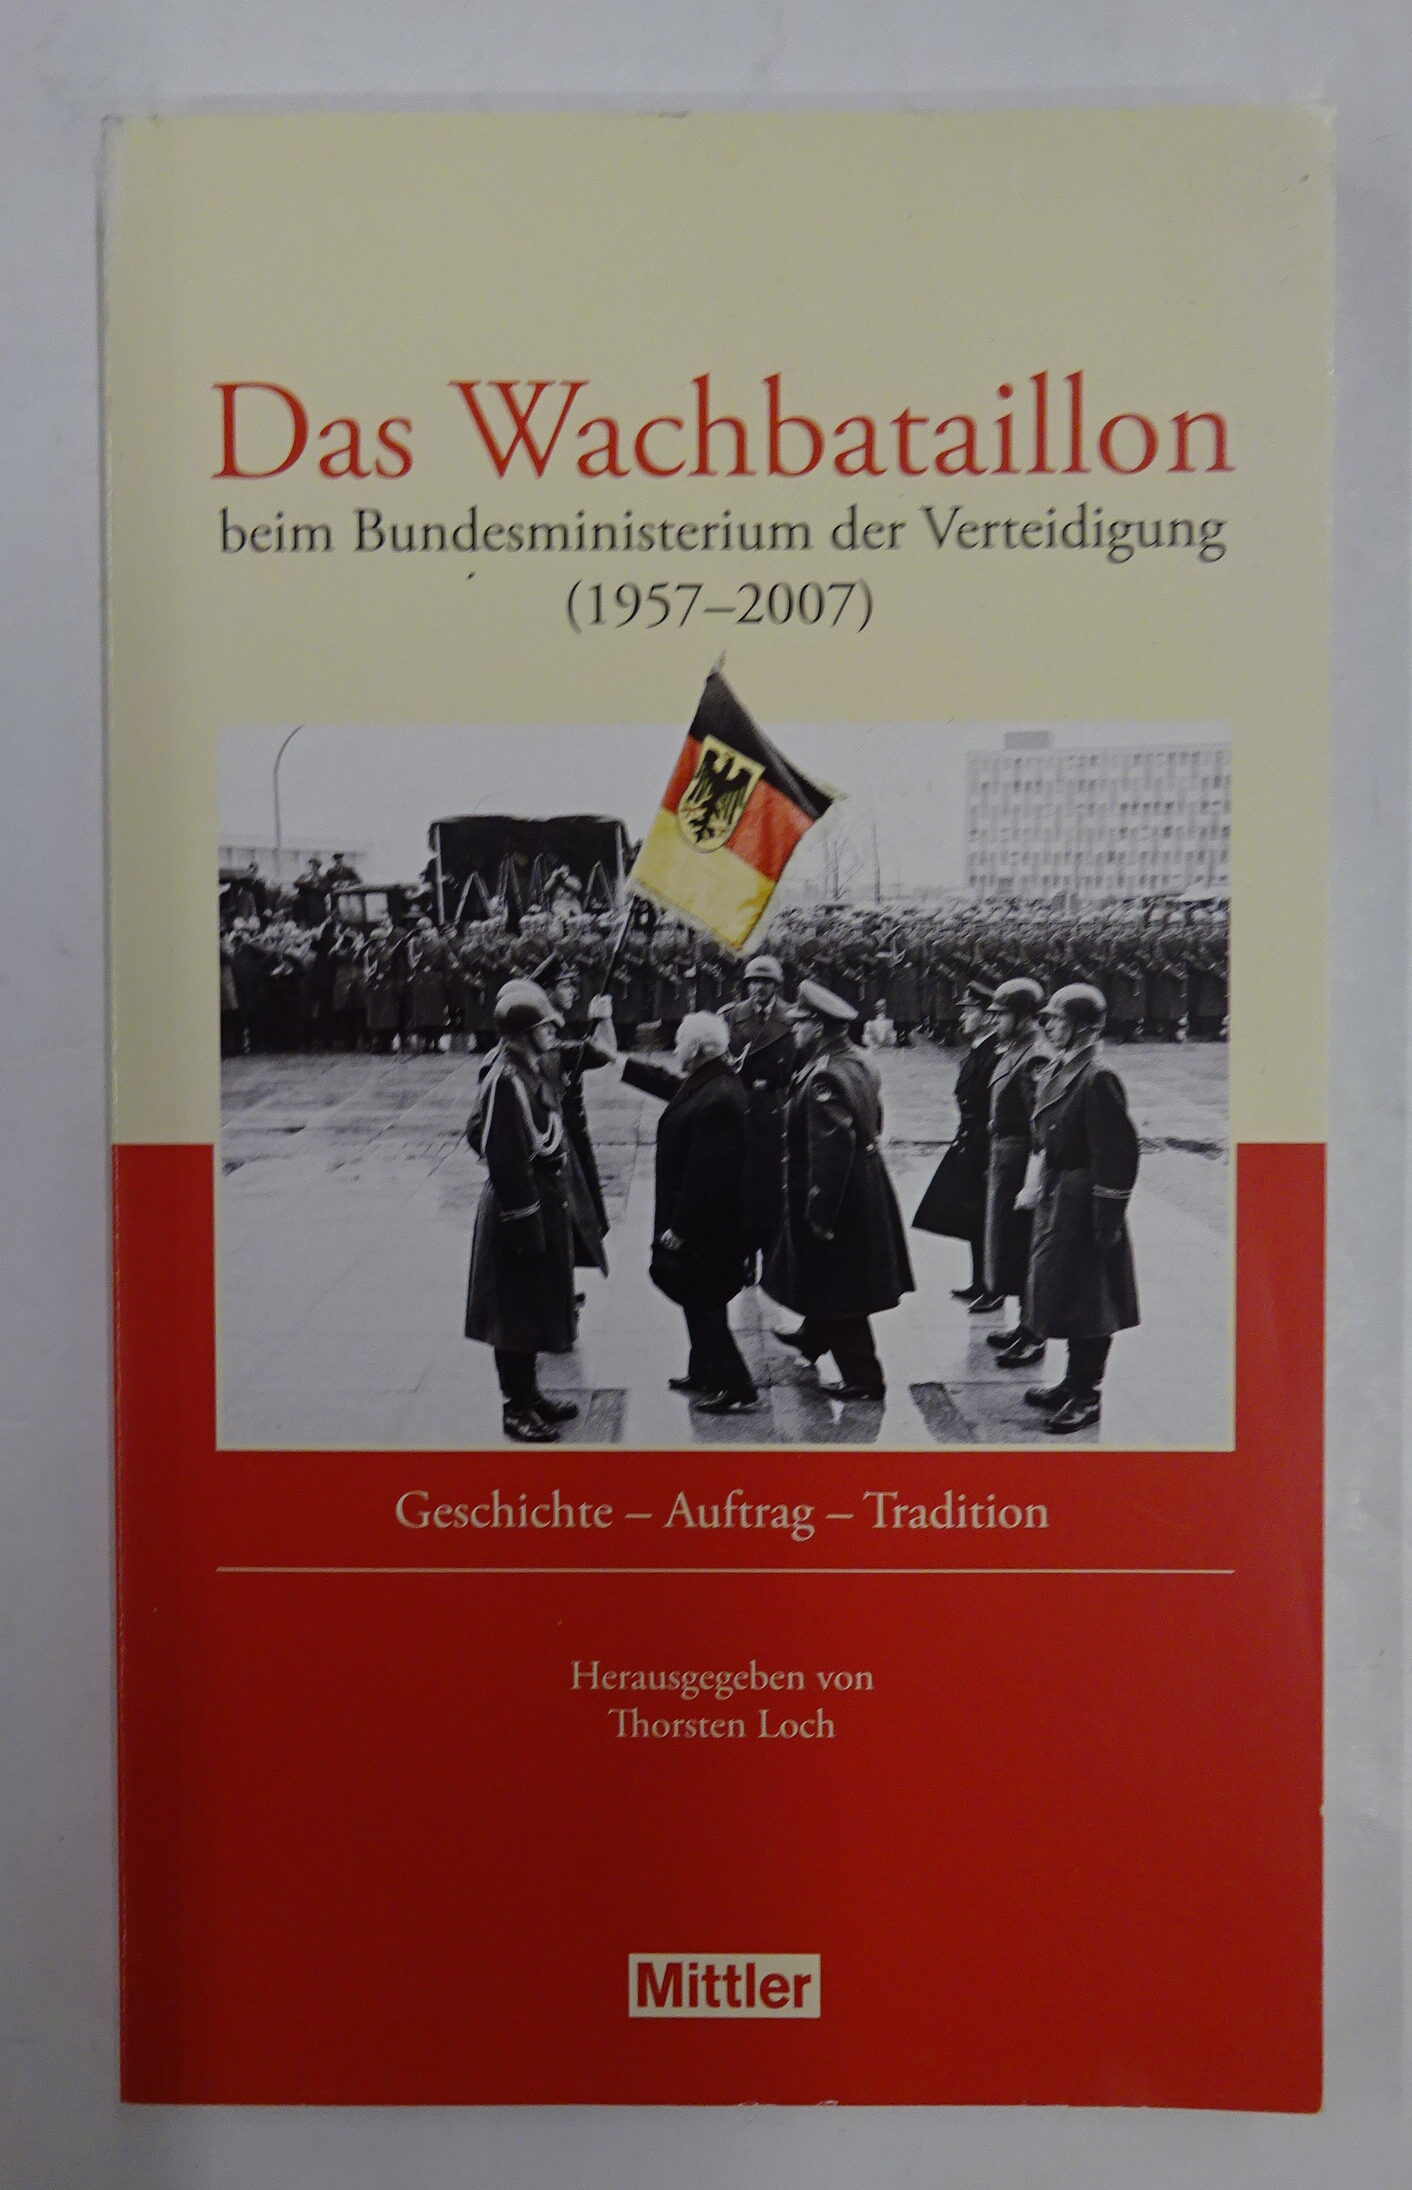 Das Wachbataillon beim Bundesministerium der Verteidigung (1957-2007). Geschichte - Auftrag - Tradition. - Loch, Thorsten (Hg.)